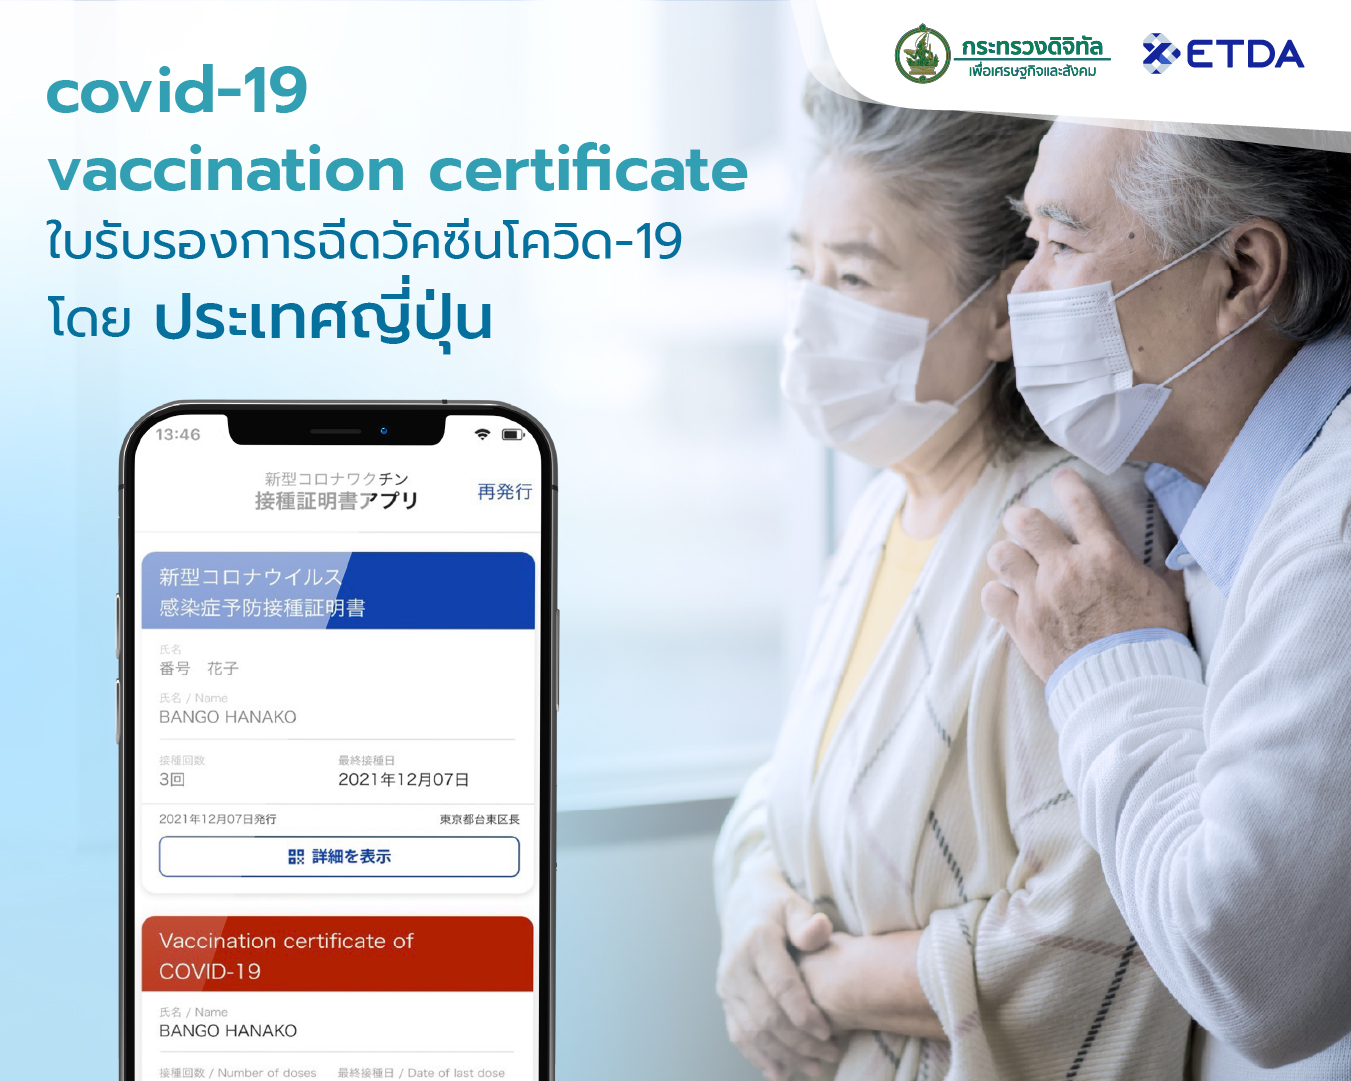 04-covid-19-vaccination-certificate-ใบรบรองการฉดวคซนโควด-19-โดย-‘ญปน’.jpg